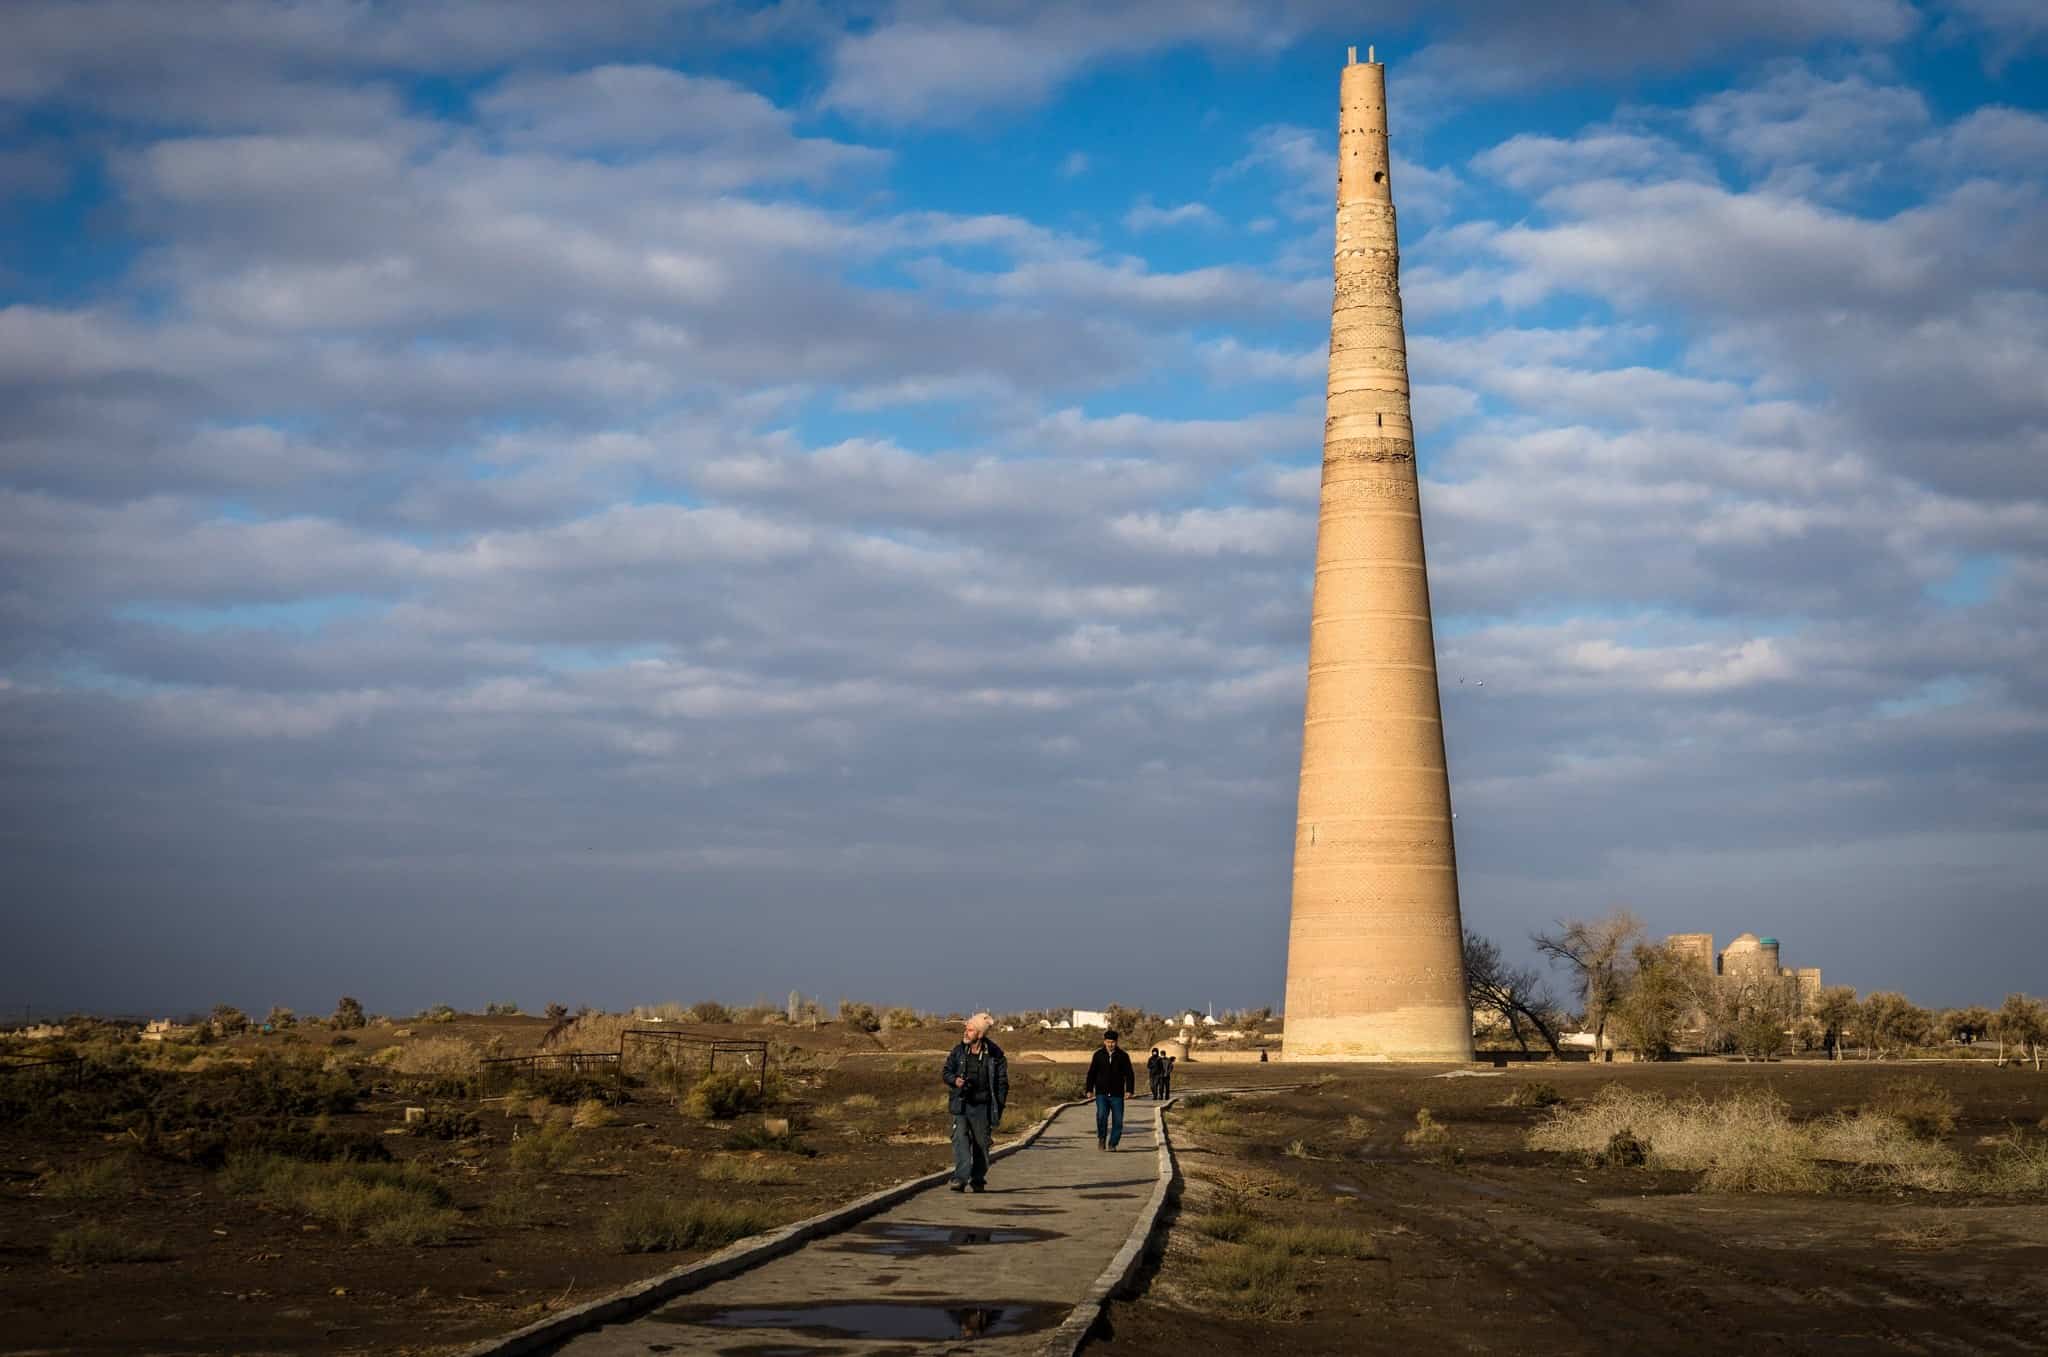 Kutlug Timur Minaret Silk Road Photo Journey